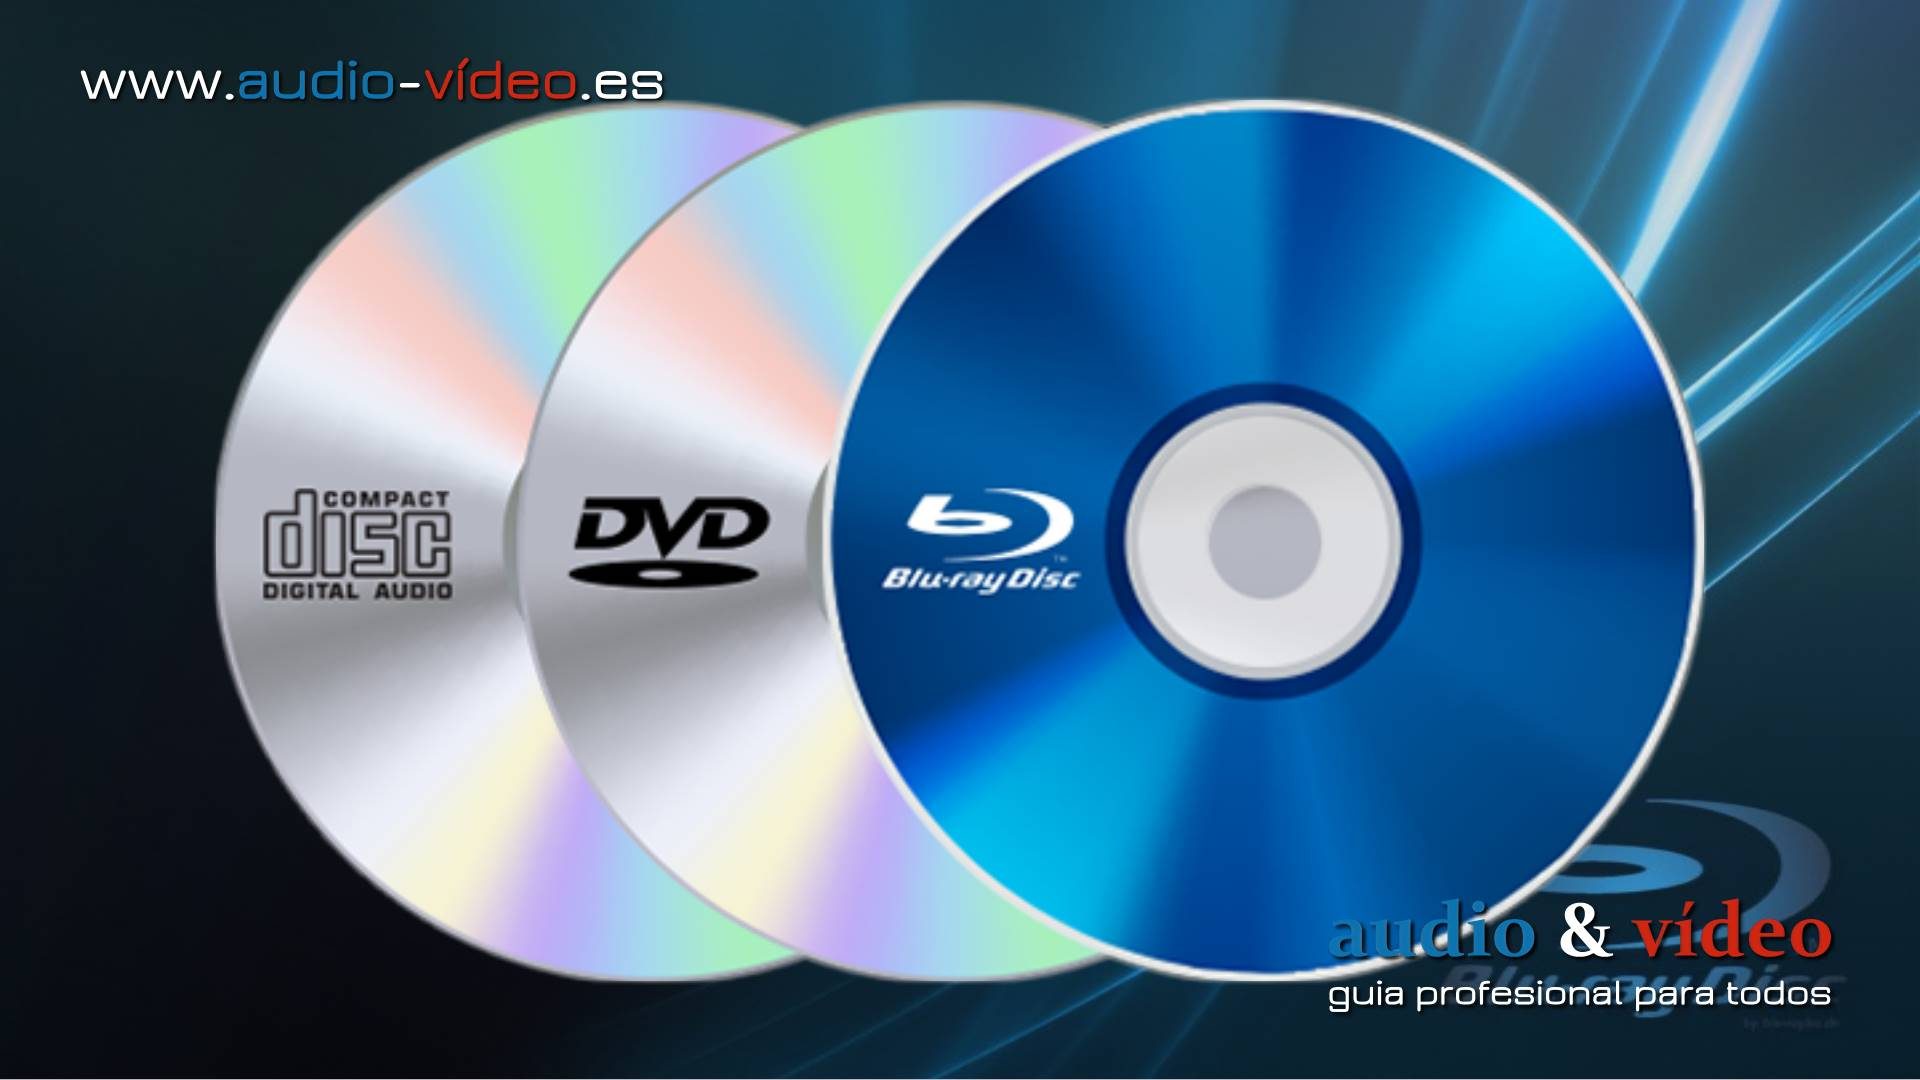 Sony propone el cierre de la planta de distribución de CD y Blu-ray UK